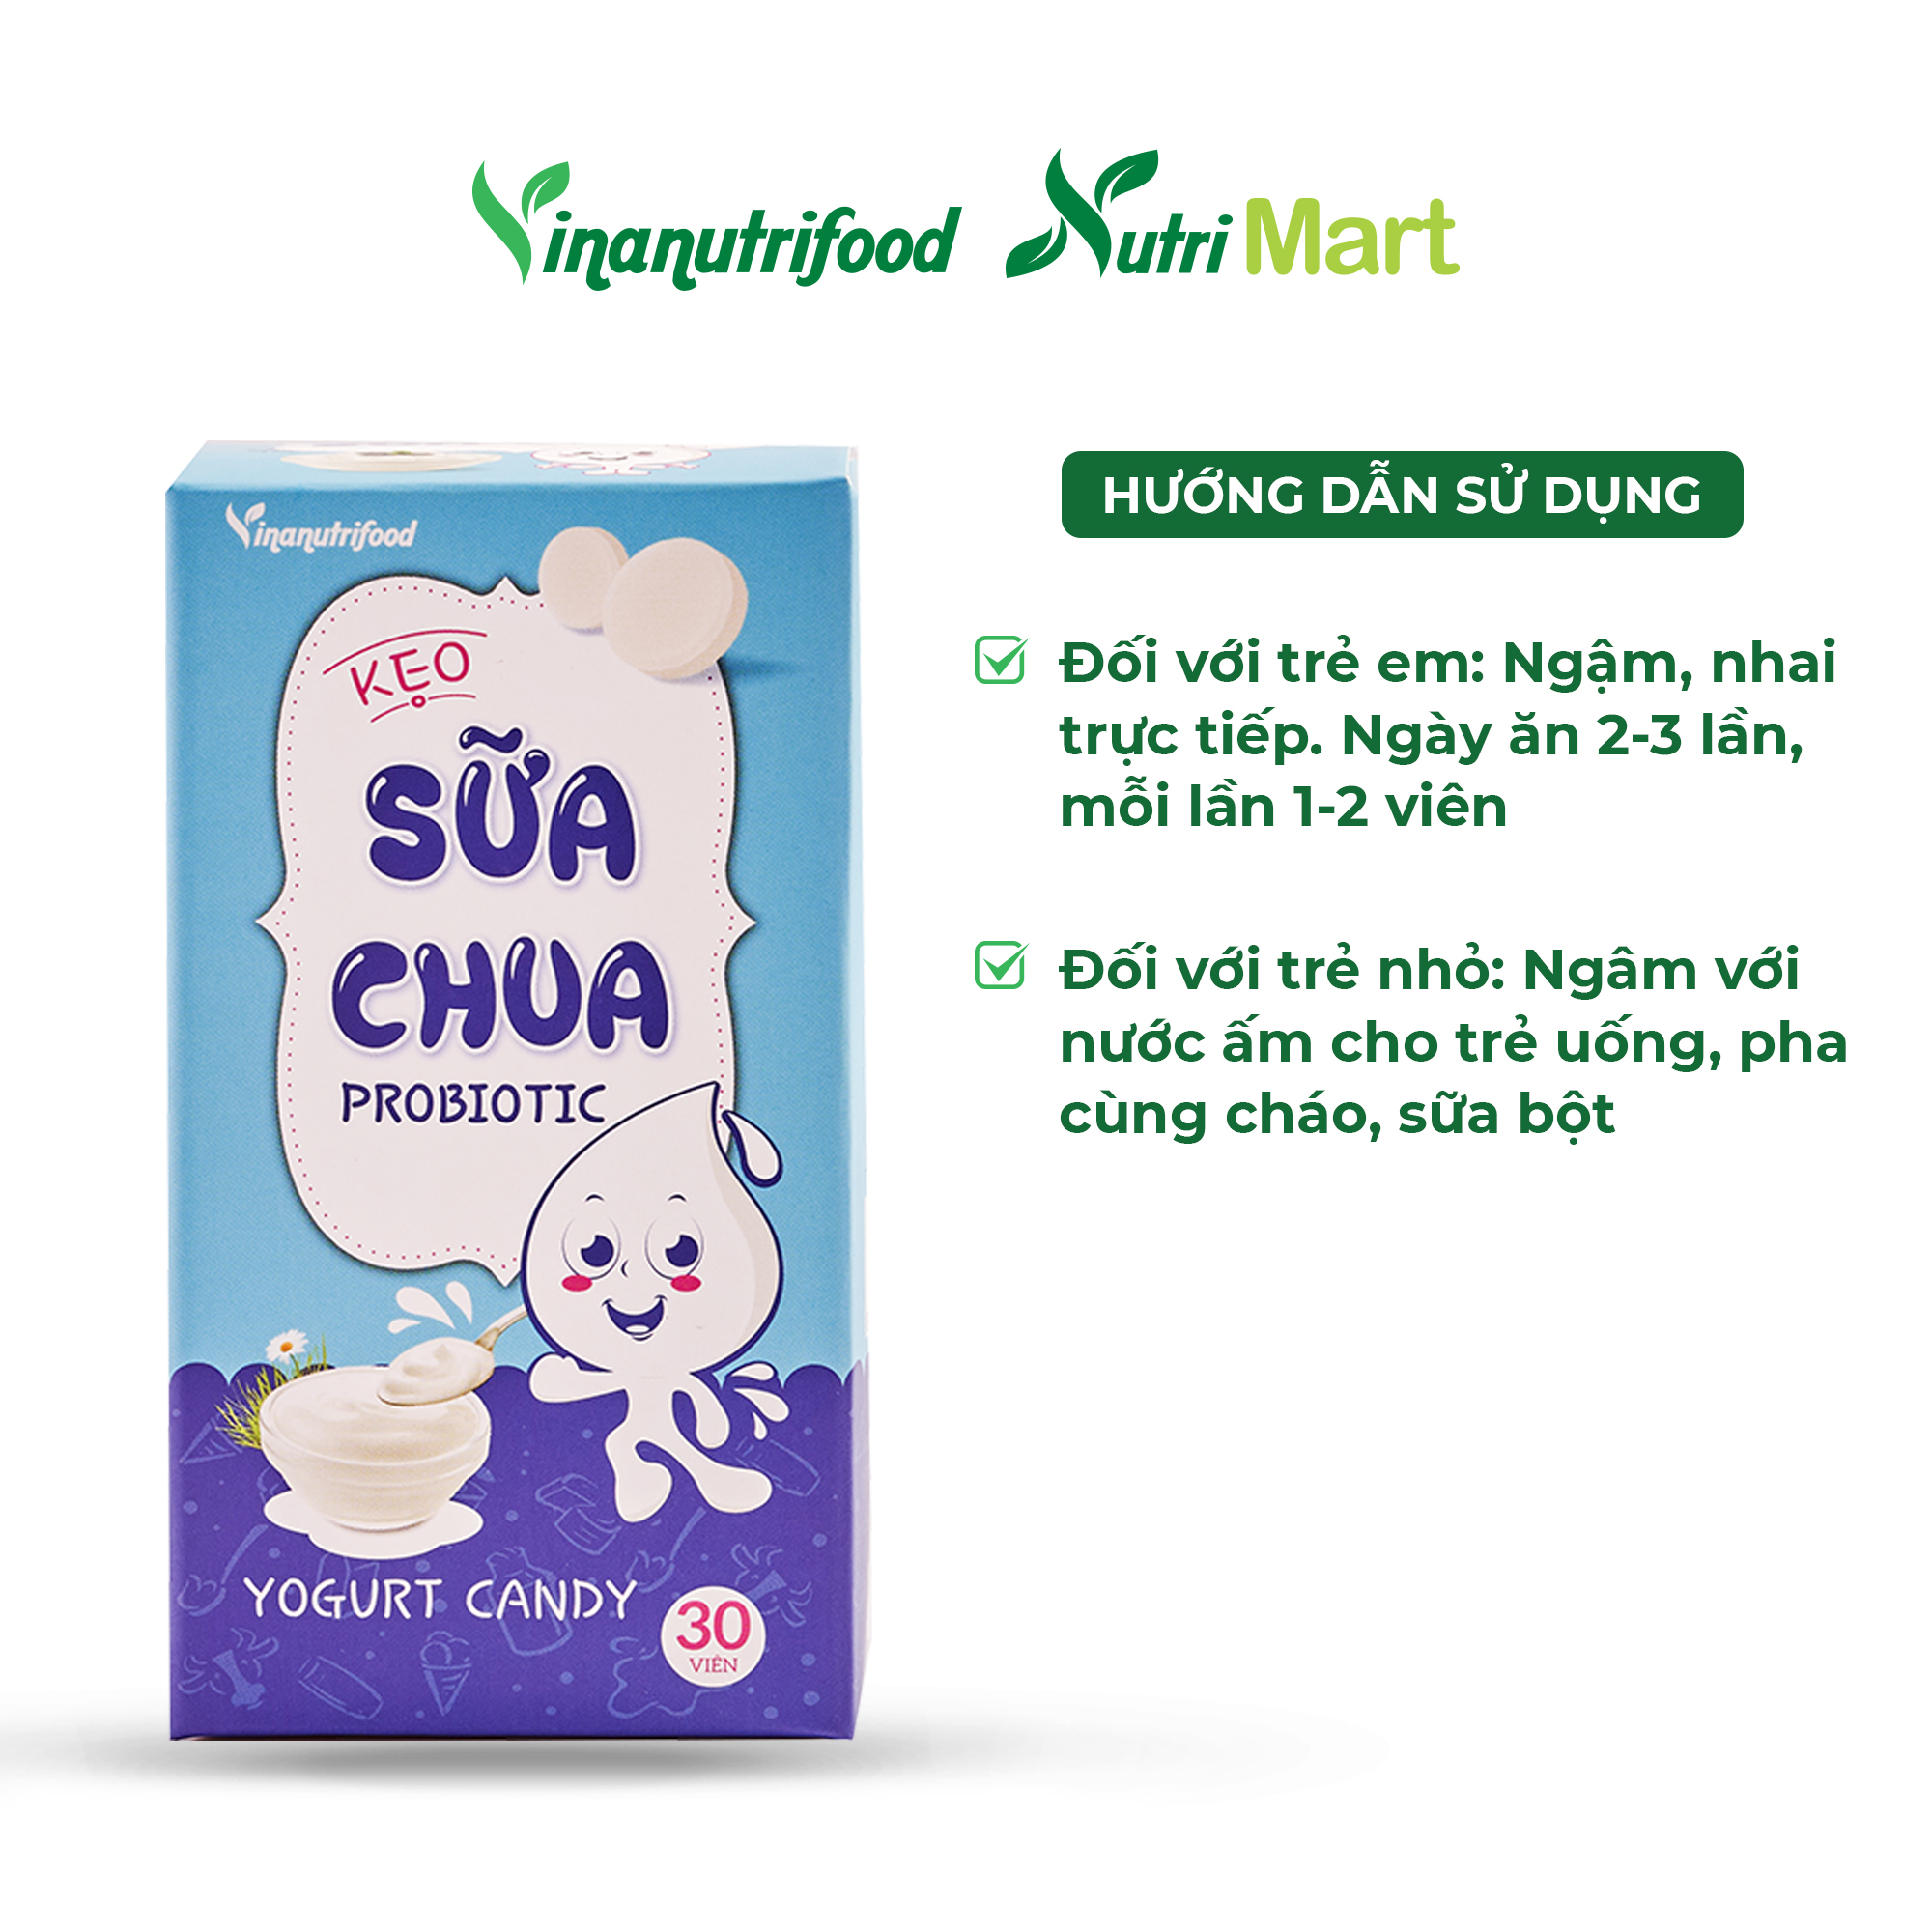 Kẹo sữa chua Probiotic chứa thành phần sữa chua lên men, bổ sung enzym lợi khuẩn tốt cho sức khỏe